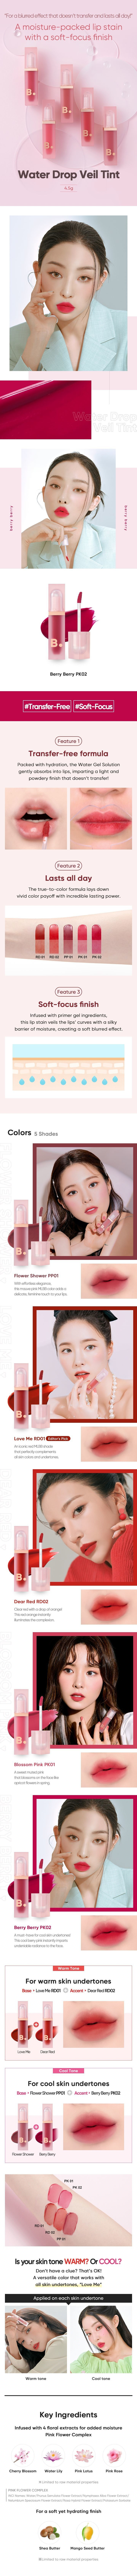 Banila Co Water Drop Veil Tint korean skincare product online shop malaysia China india1